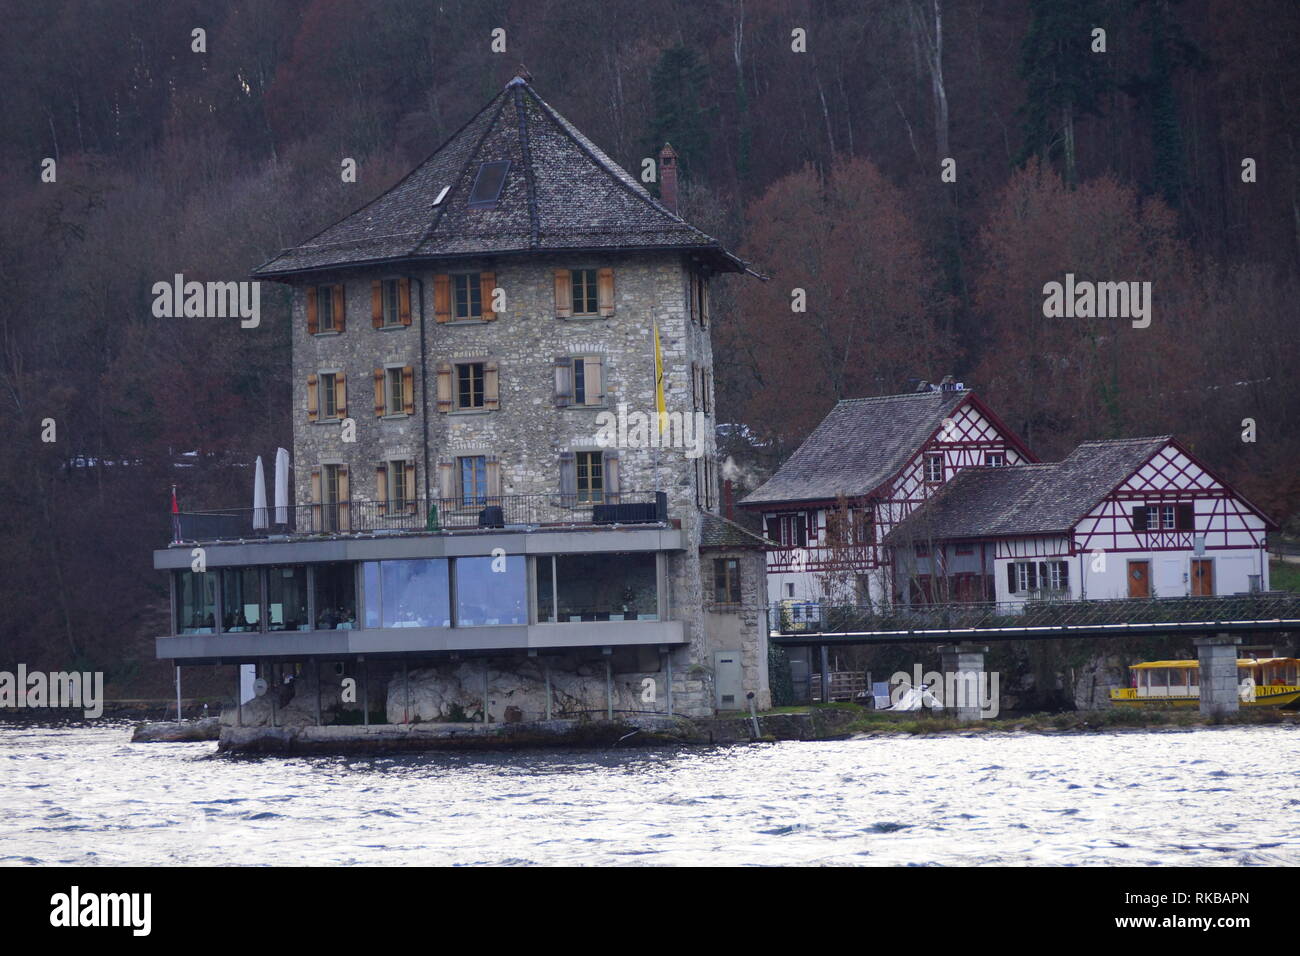 Rheinfall on the Rhine River Stock Photo